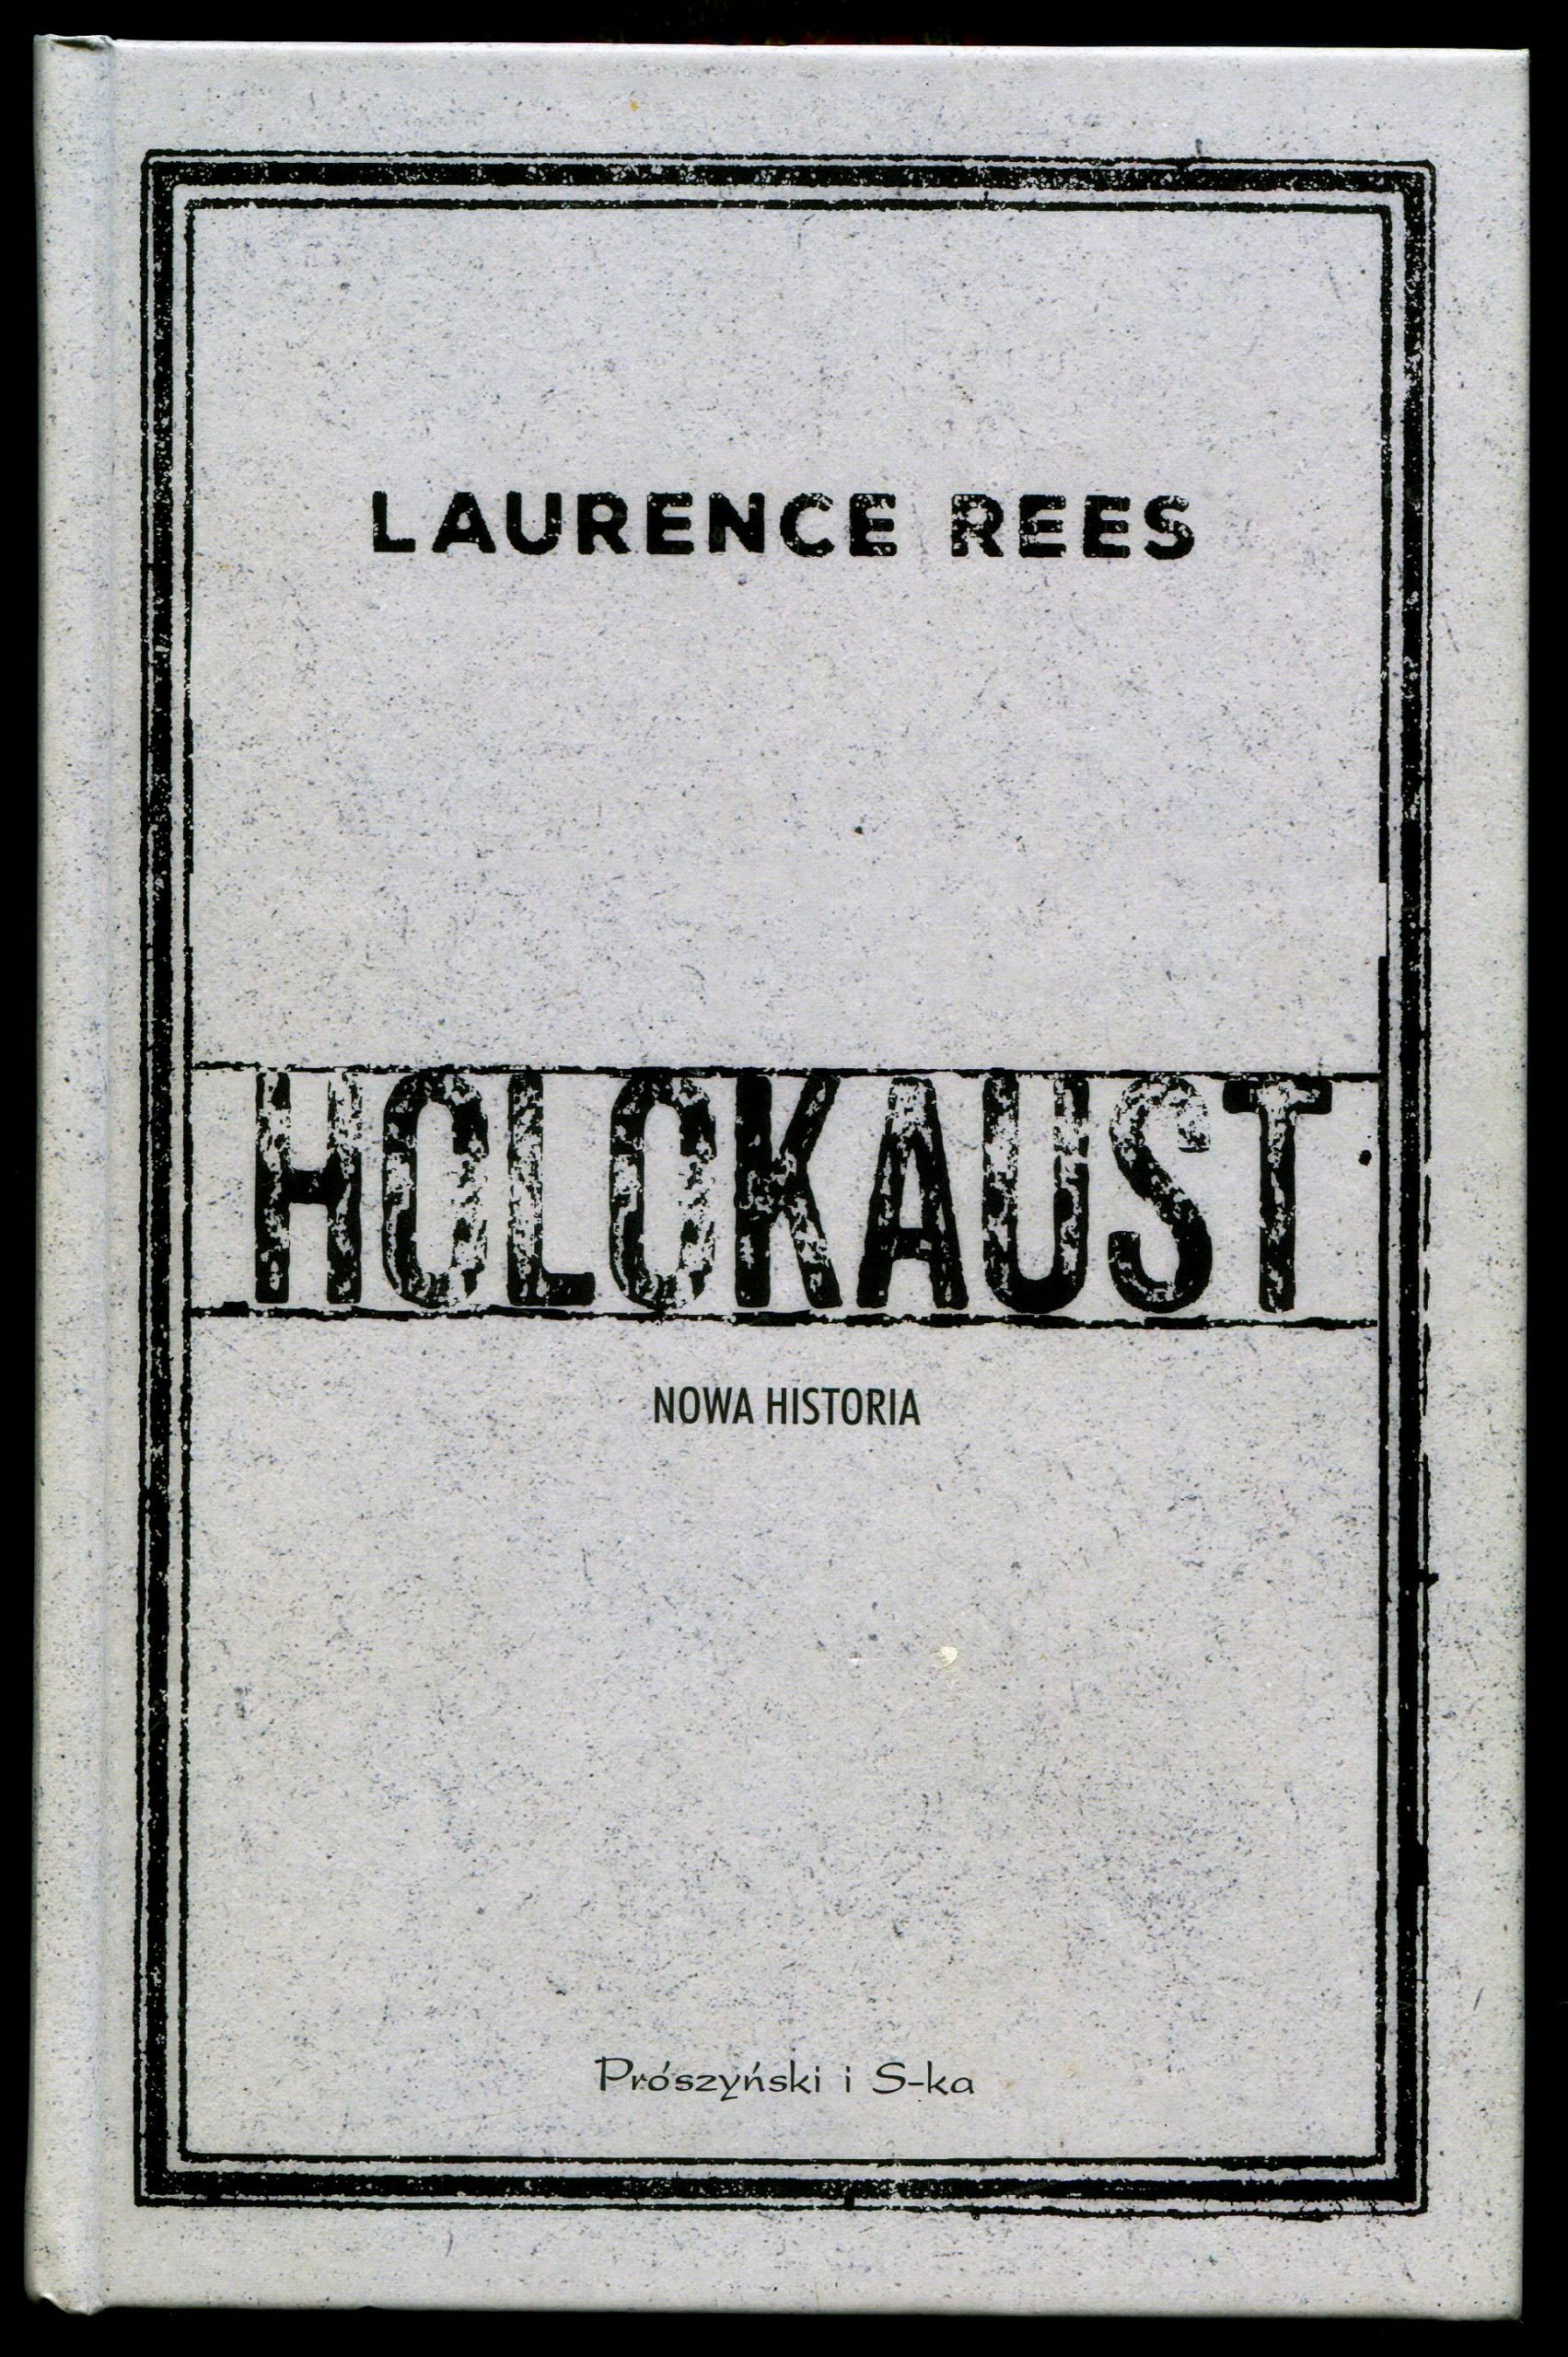 Laurence Rees, Holocaust. Nowa historia, Prószyński i S-ka